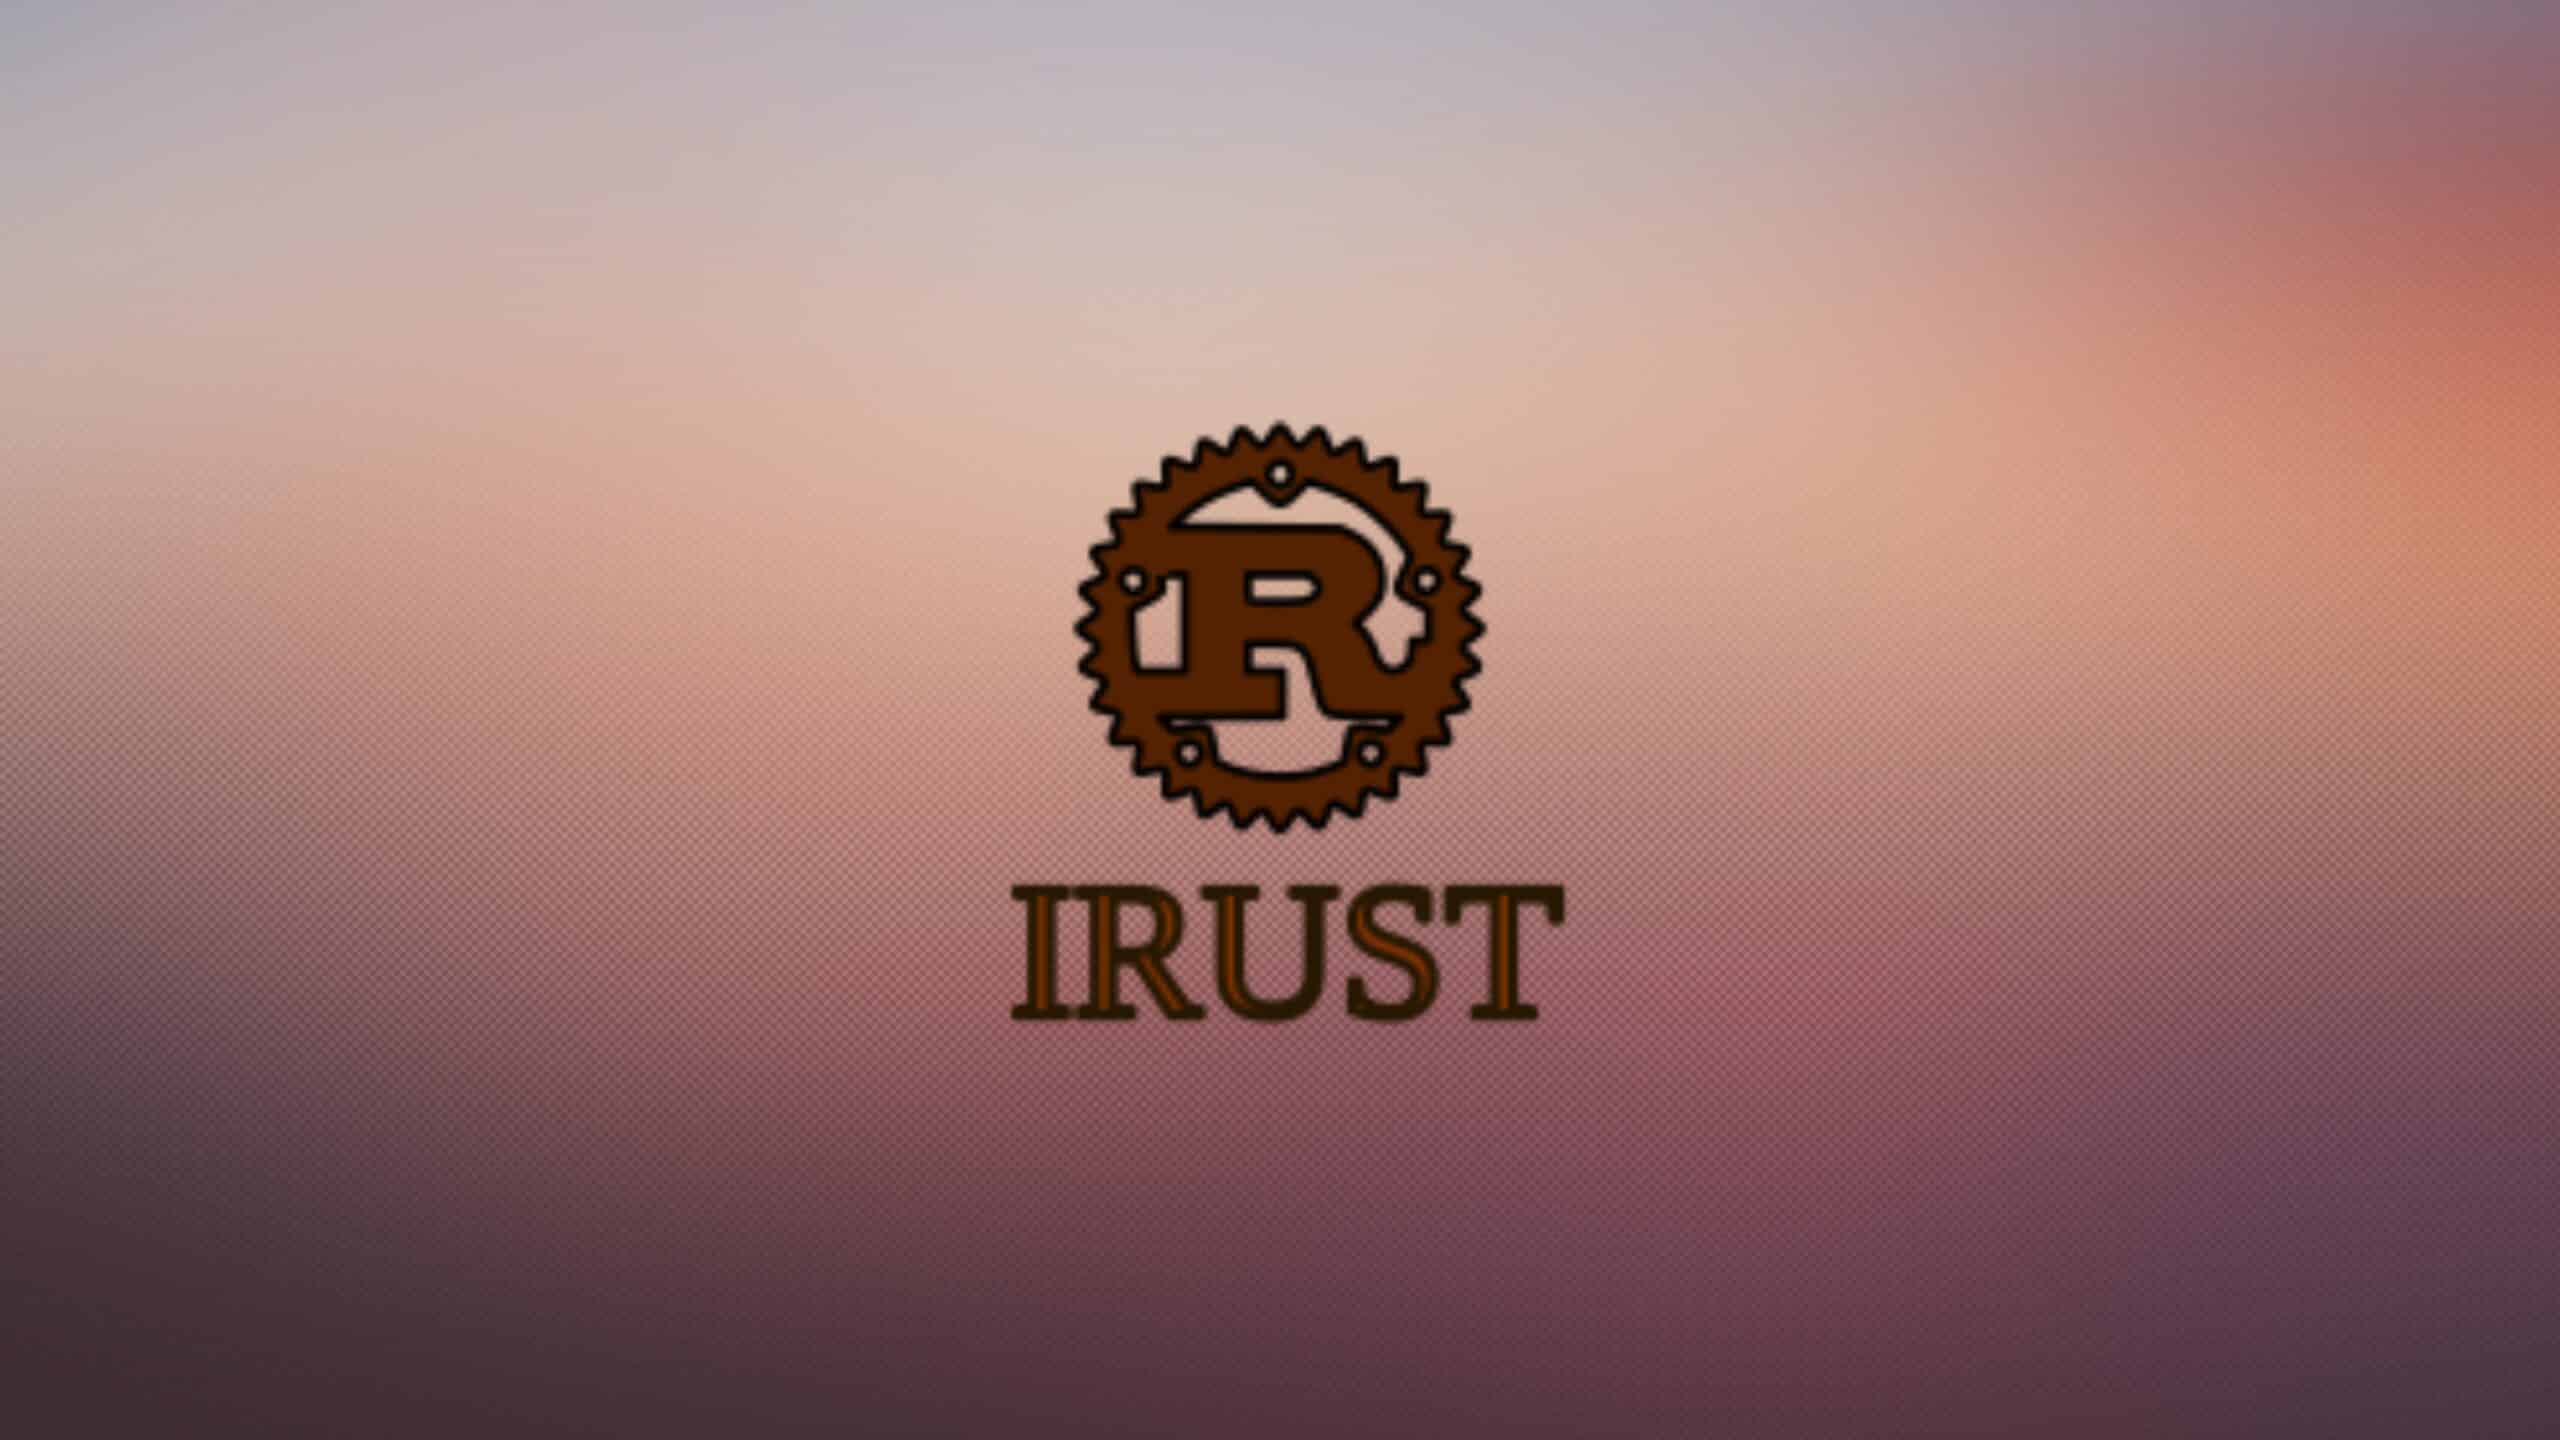 Rust 1.75.0 acaba de ser lançado